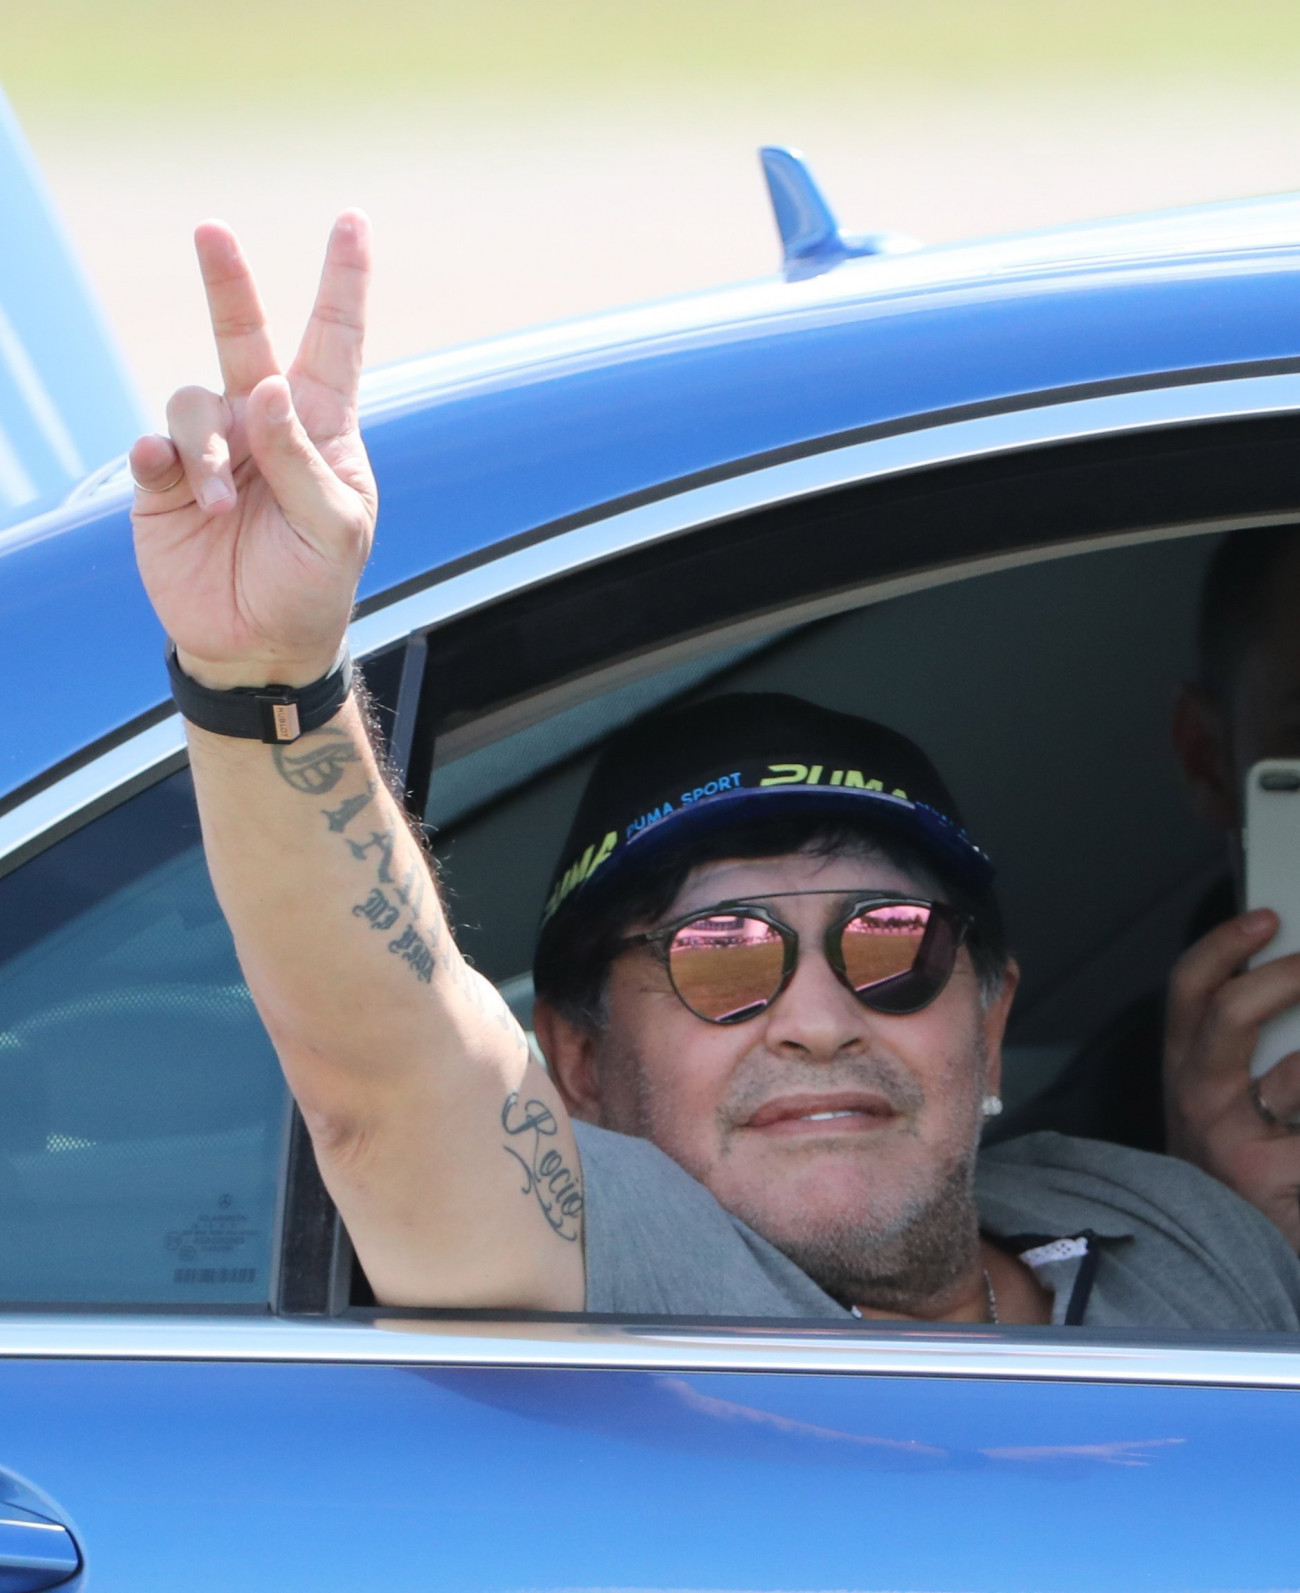 Breszt, 2018. július 16.
Diego Maradona egykori argentin válogatott labdarúgó int egy autóból, miután megérkezett a fehéroroszországi Breszt nemzetközi repülőterére 2018. július 16-án. Az 57 éves legendás futballista ezen a napon három évre szóló szerződést írt alá, amellyel a fehérorosz élvonalban szereplő Dinama Breszt labdarúgóklub elnökévé vált. (MTI/EPA/Taccjana Zenkovics)